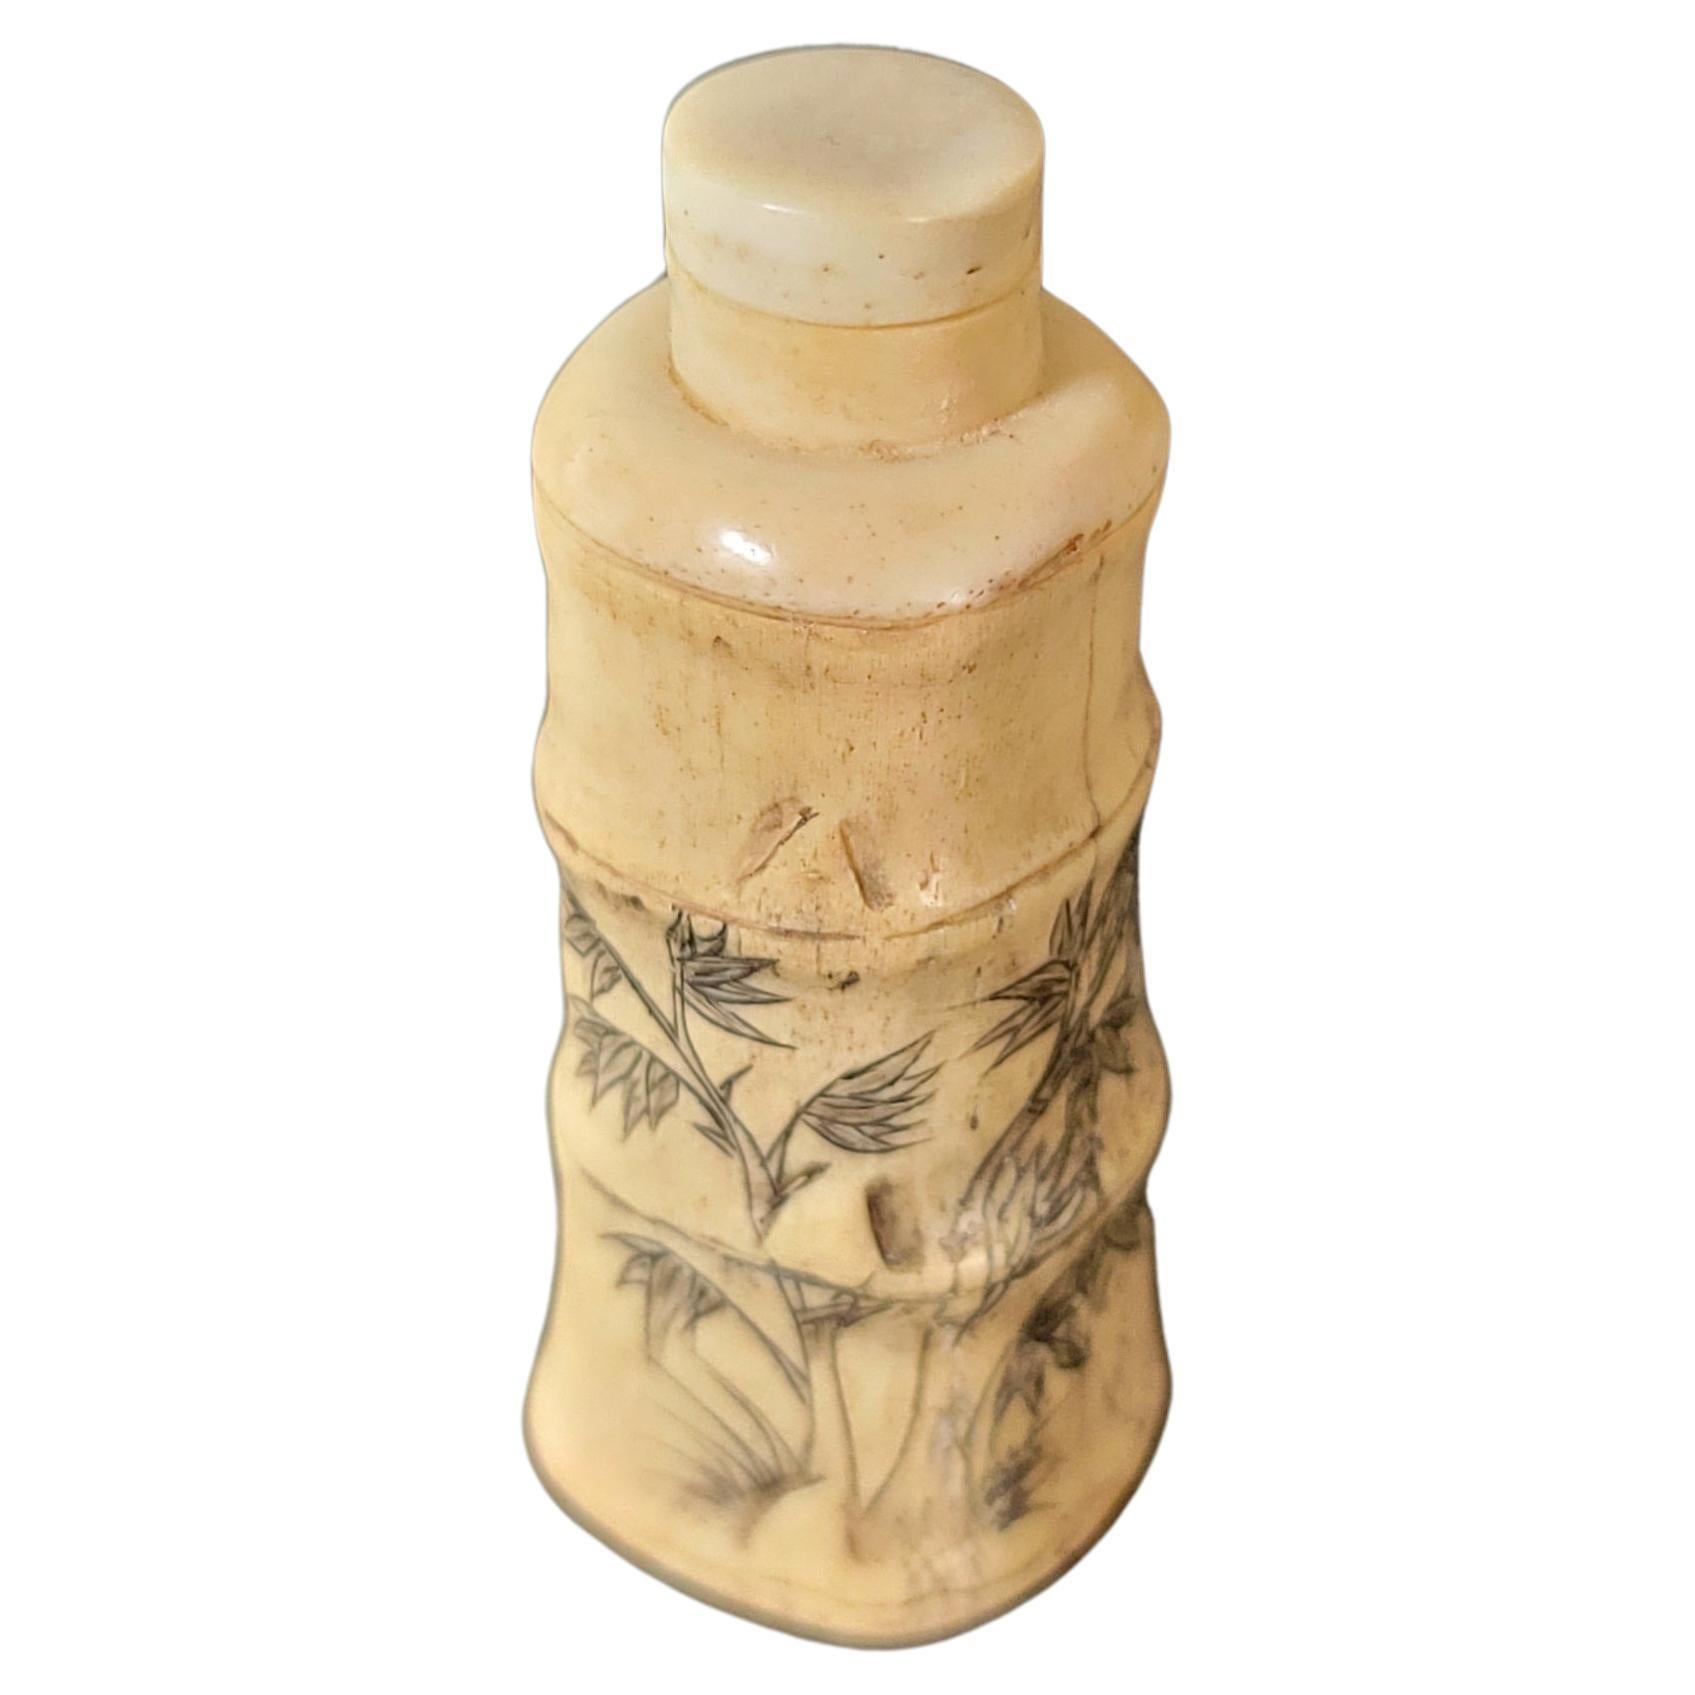 Japanische geschnitzte Schnupftabakflasche in Bambusform aus Knochen